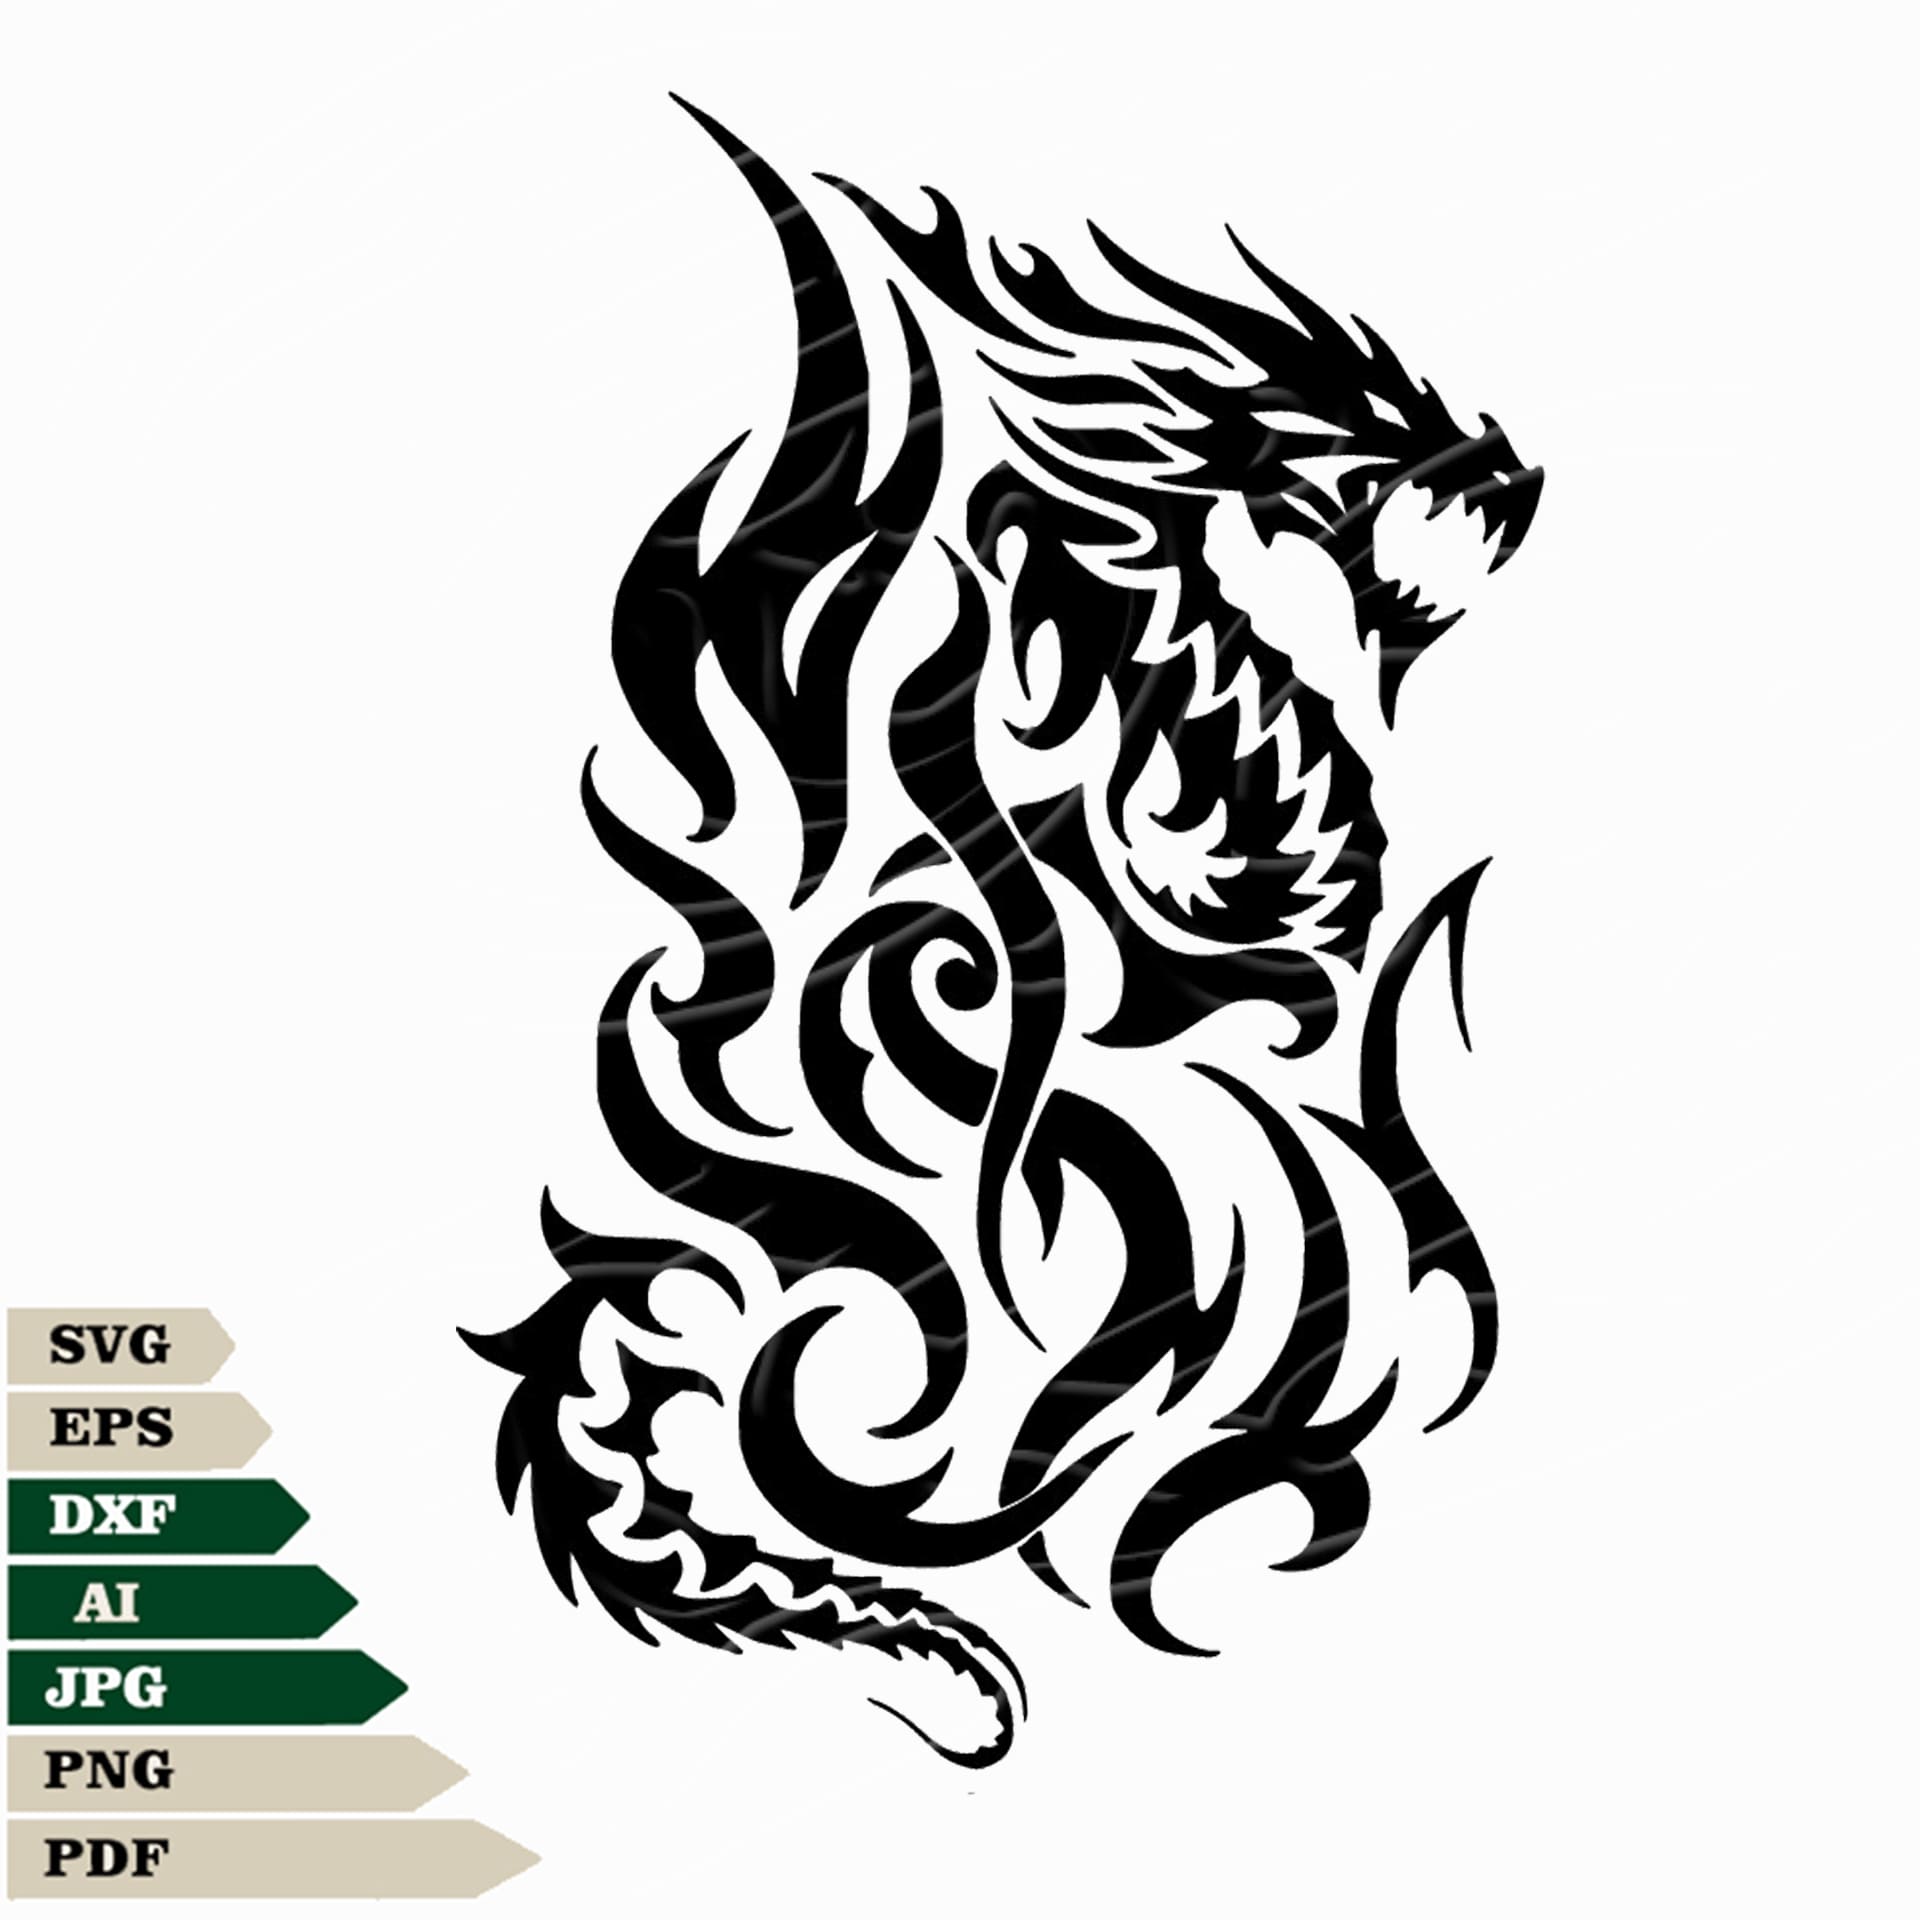 Dragon Svg File, Dragon Head Svg Design, Angry Dragon Png, Dragon Vect ...